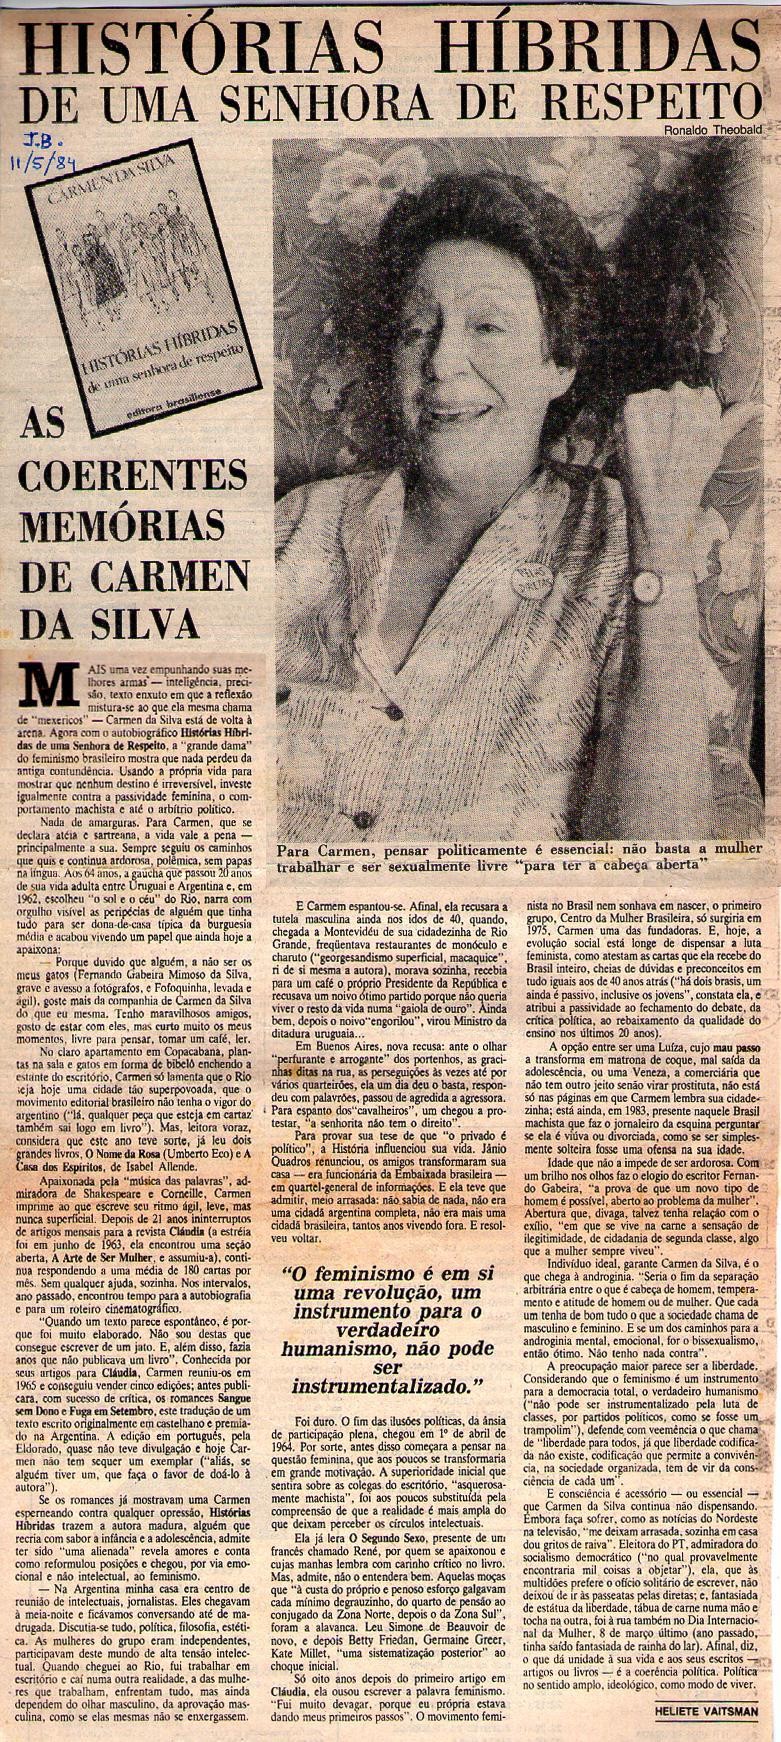 11 de Maio de 1984 - Jornal do Brasil. Histórias híbridas de uma senhora de respeito.